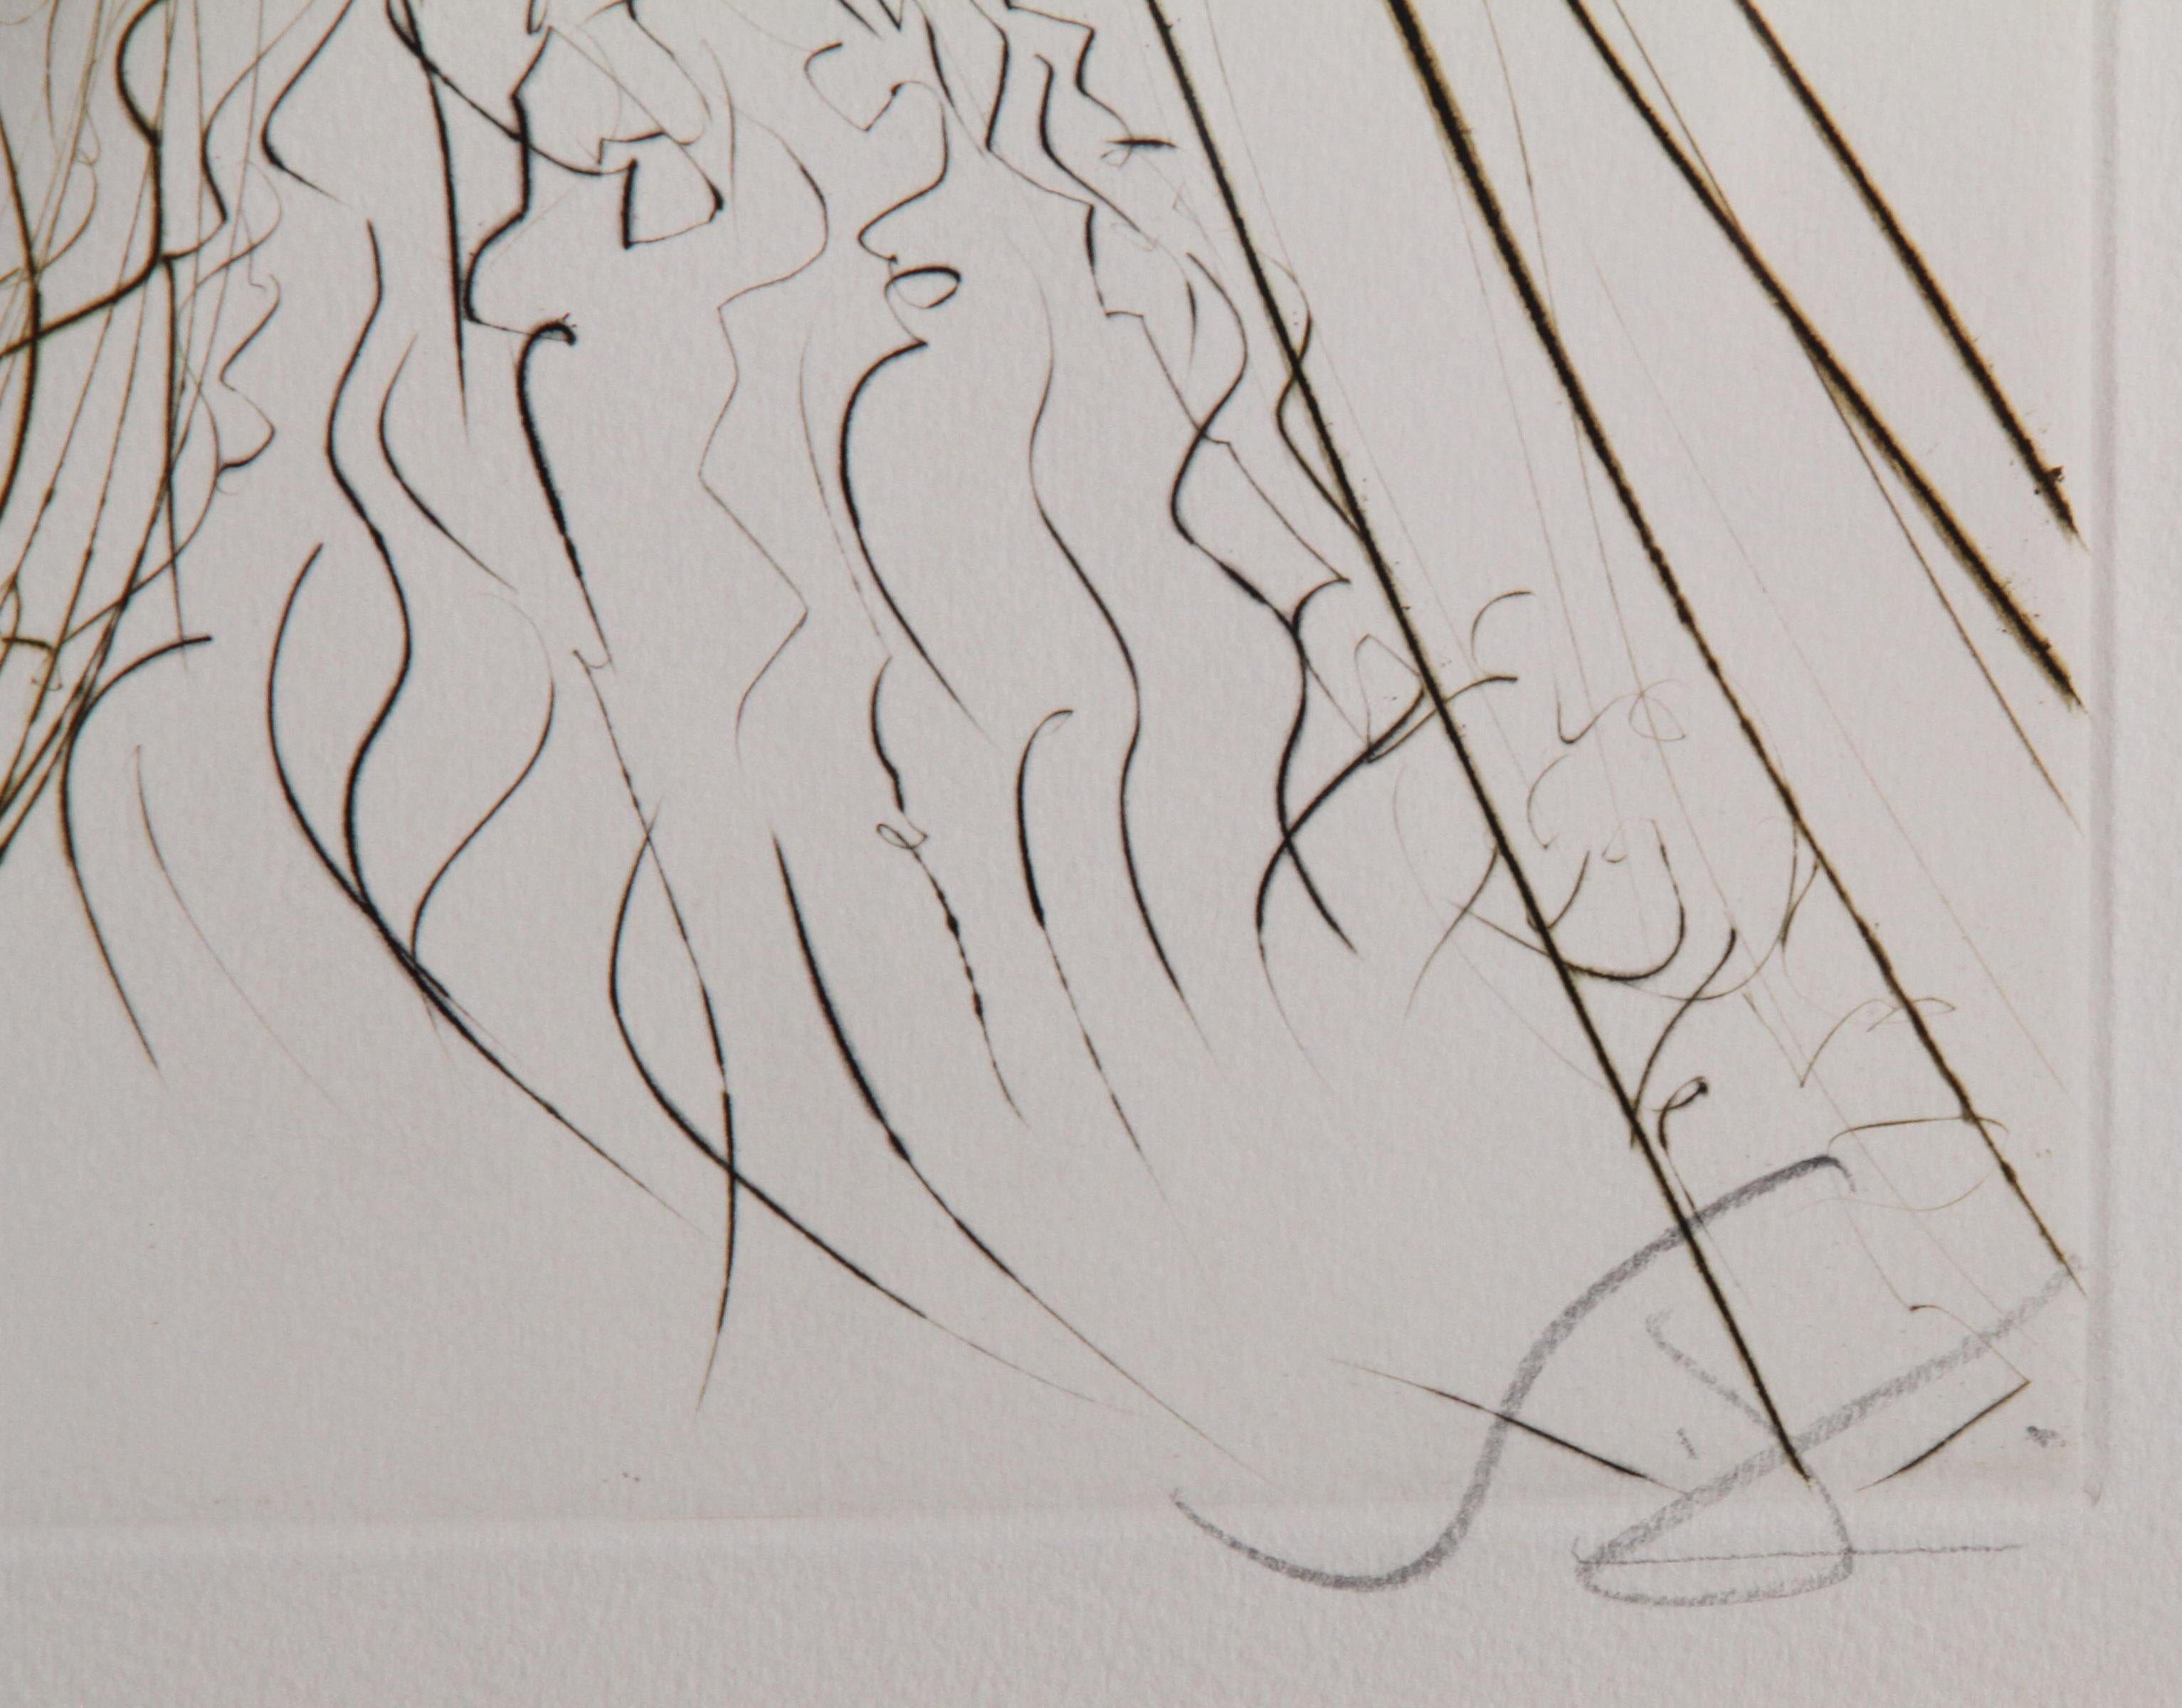 Le Roi Marc aus Tristan et Iseult, gerahmter Kupferstich von Salvador Dali – Print von Salvador Dalí